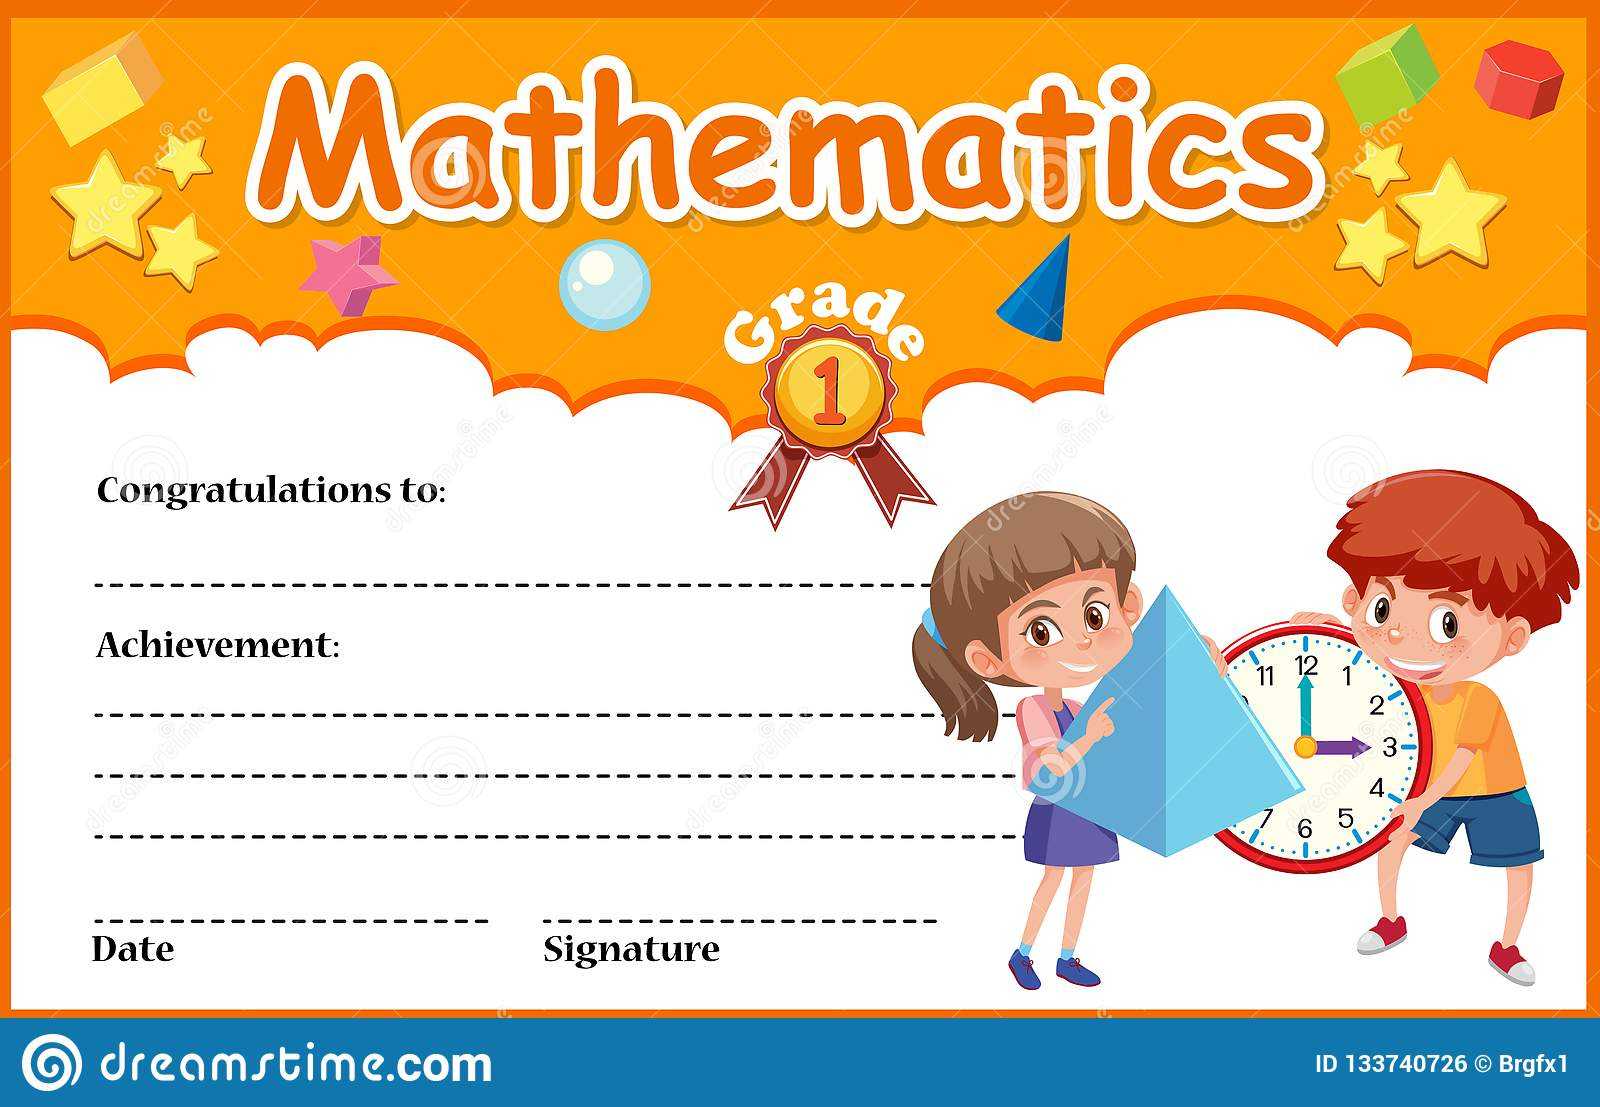 Mathematics Diploma Certificate Template Stock Vector Regarding Math Certificate Template